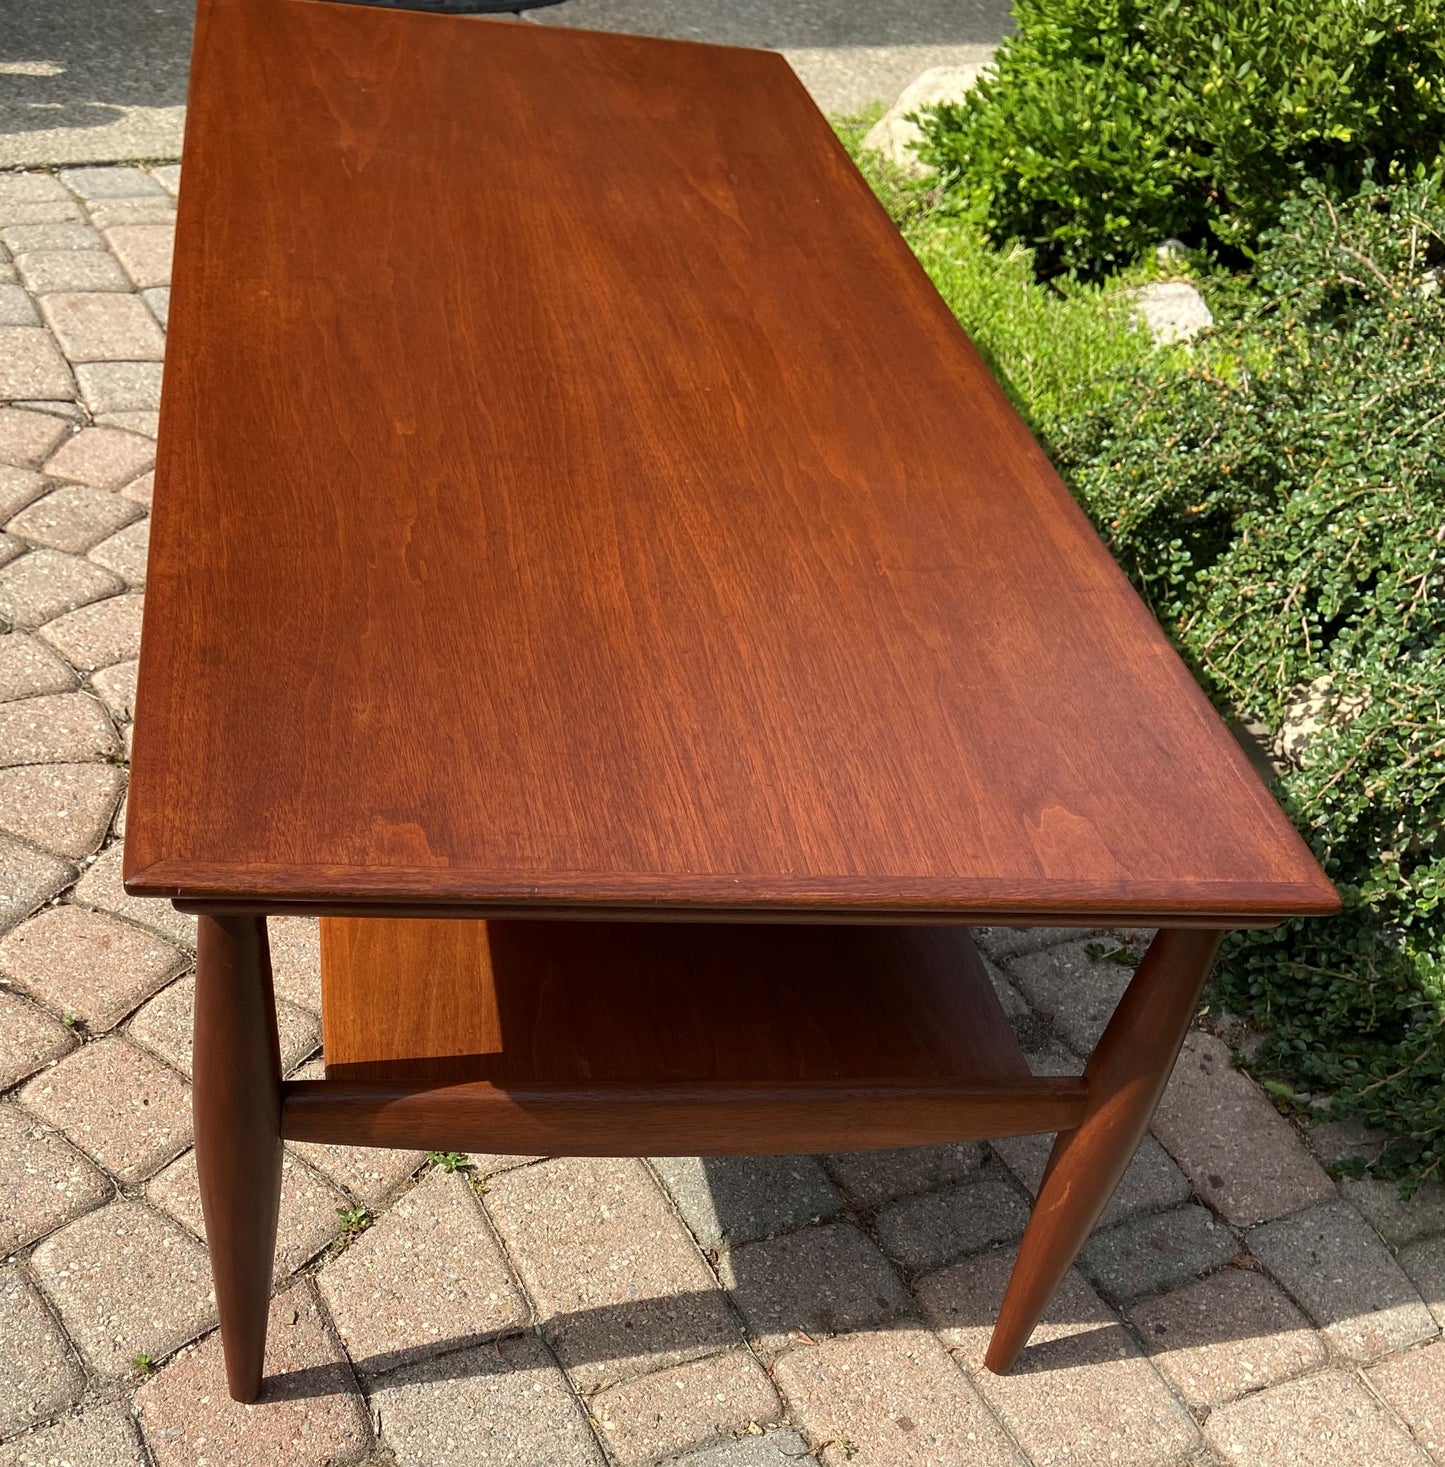 REFINISHED Mid Century Modern walnut coffee table w shelf